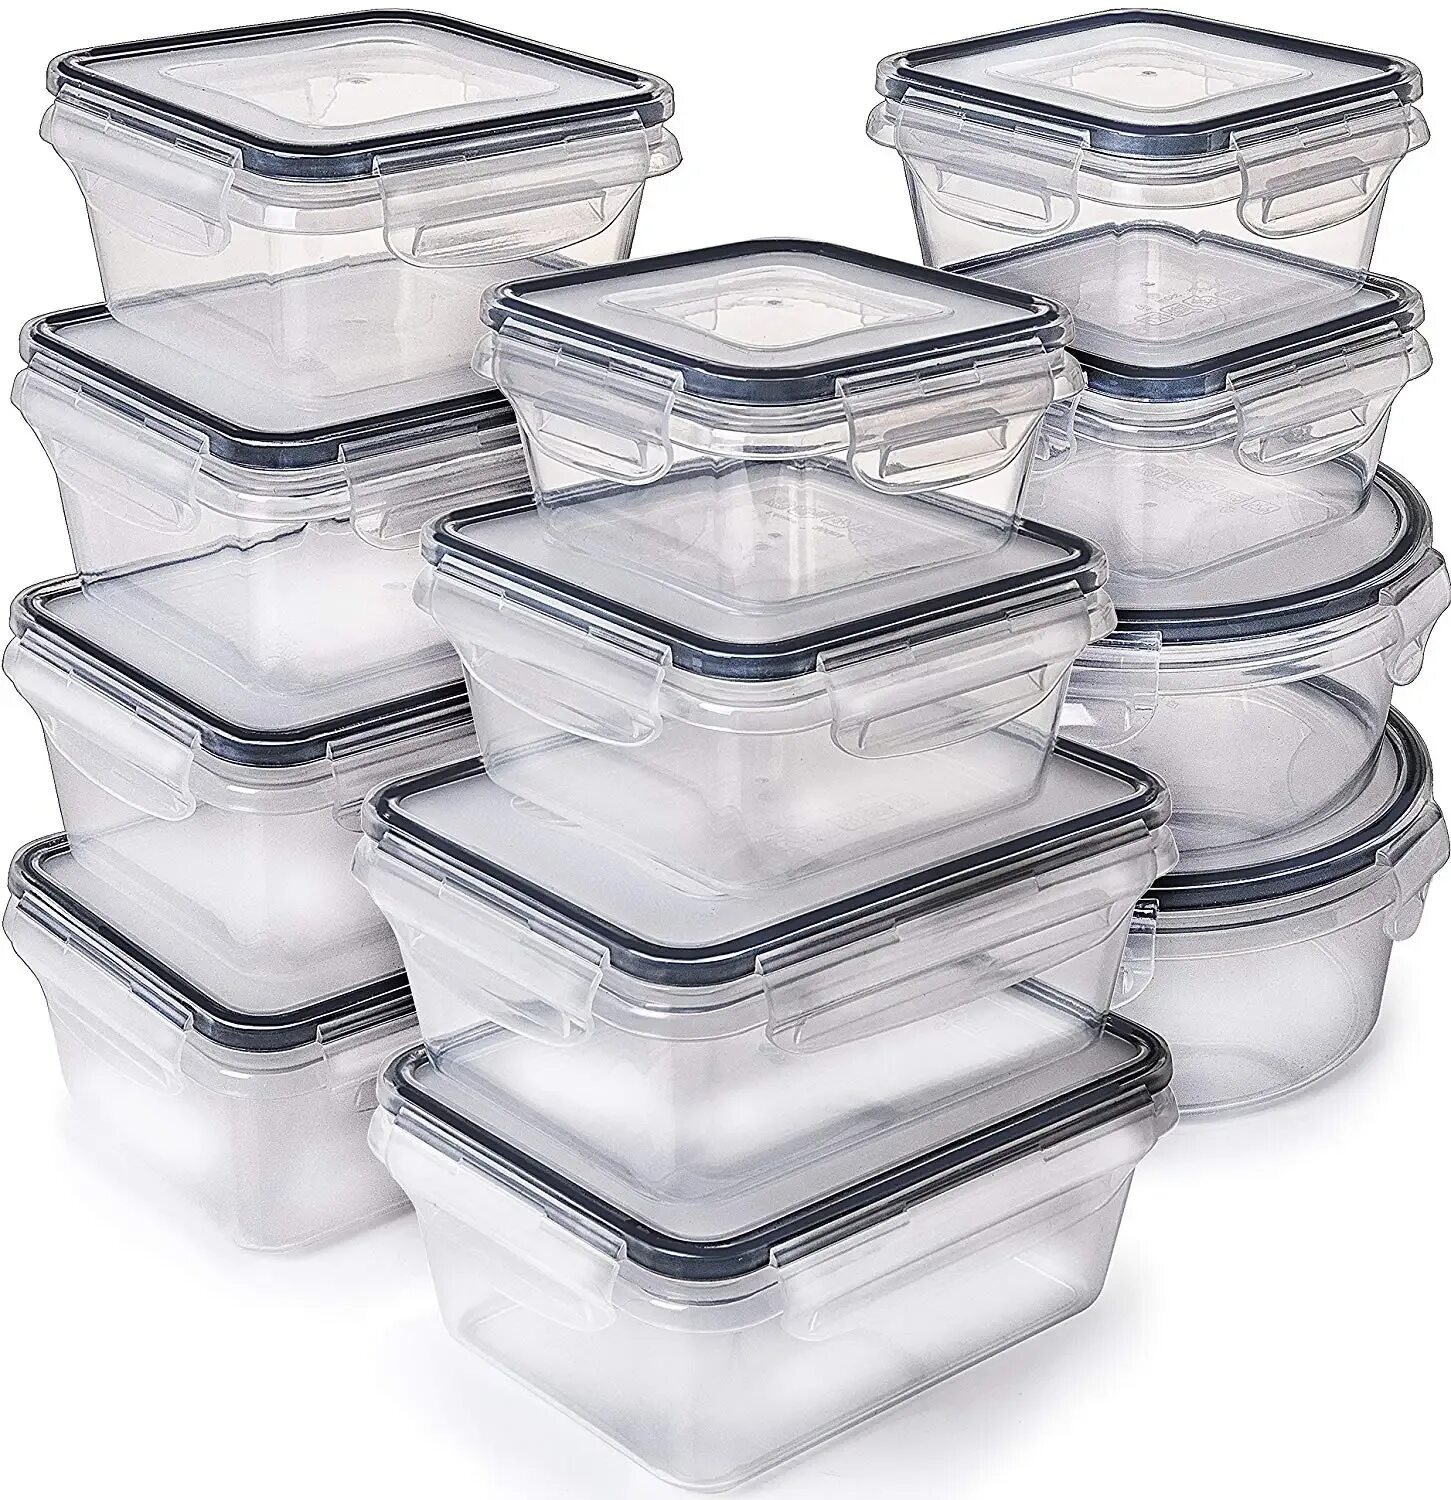 Food Container 12шт. Набор контейнеров герметичных на защелках 3шт (0,8л 1,6л 2,75л). Пластиковый. Контейнер для пищи пластиковый.